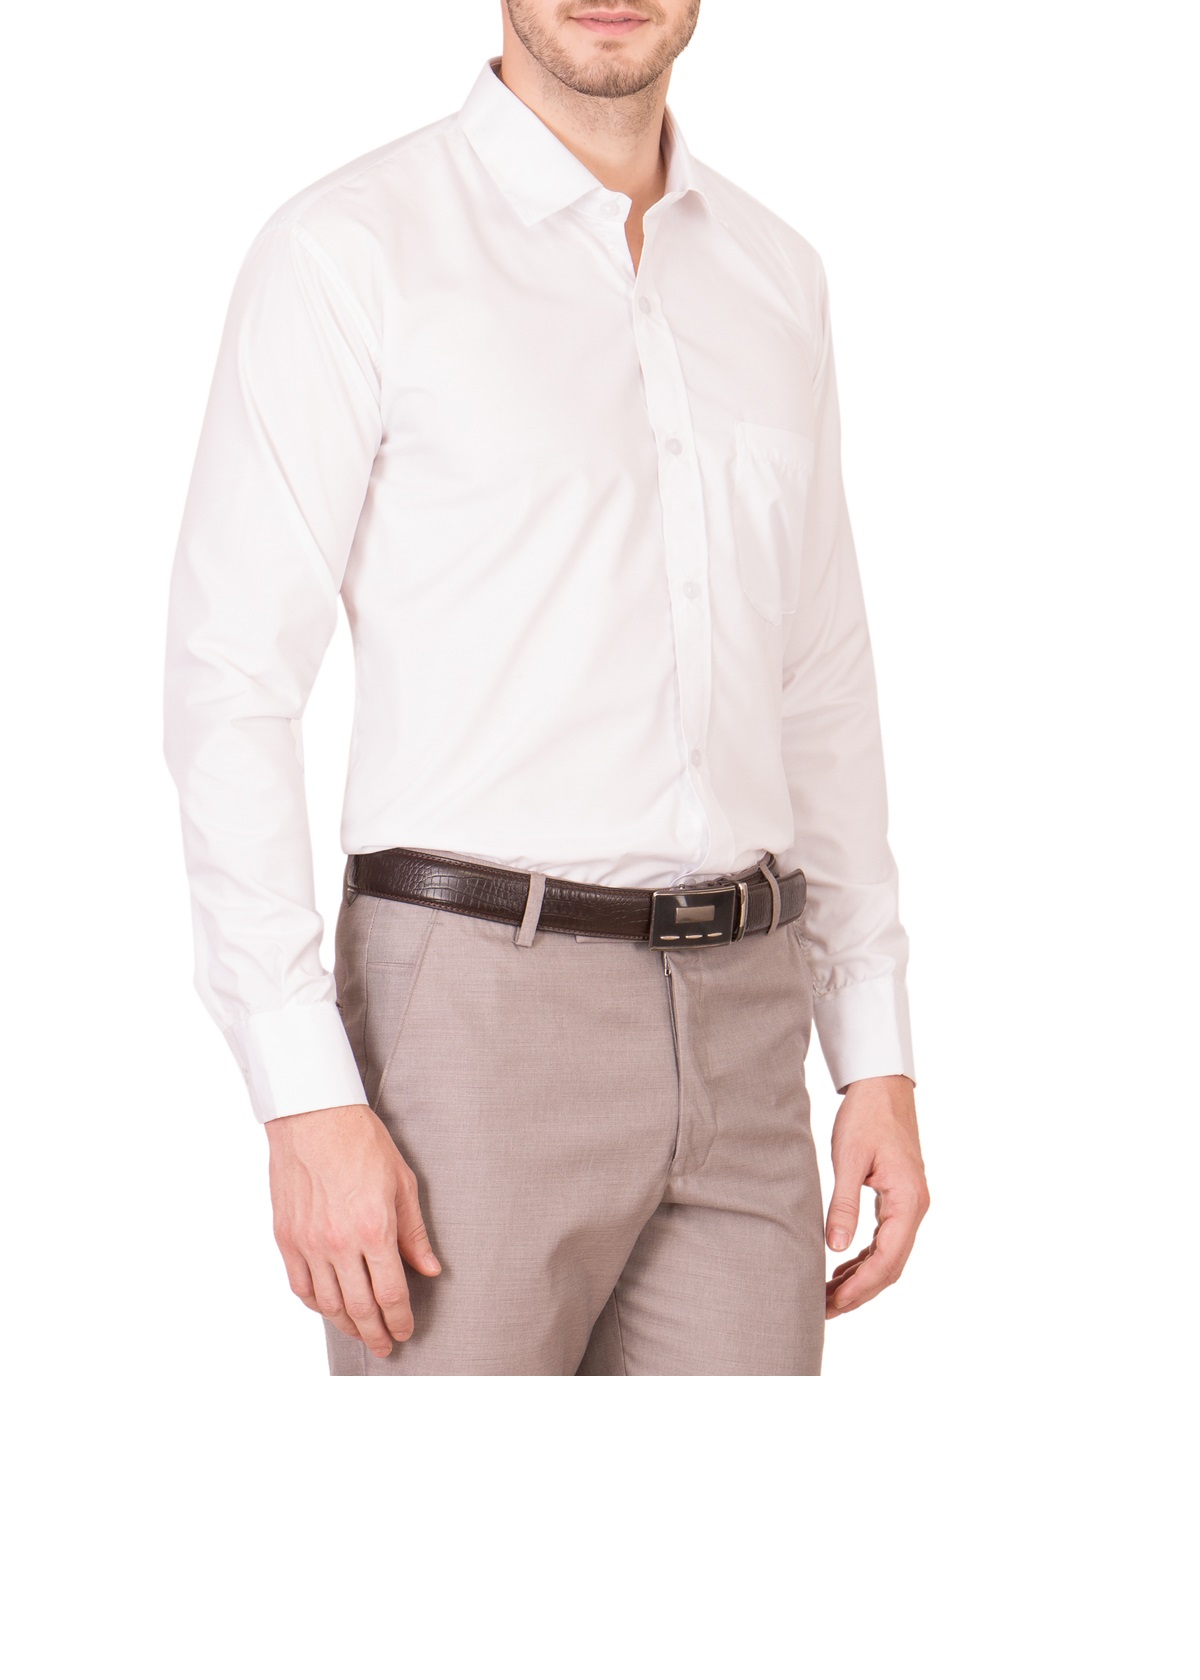 Buy Akaas White Full sleeves Formal Shirt For Men Online @ ₹349 from ...